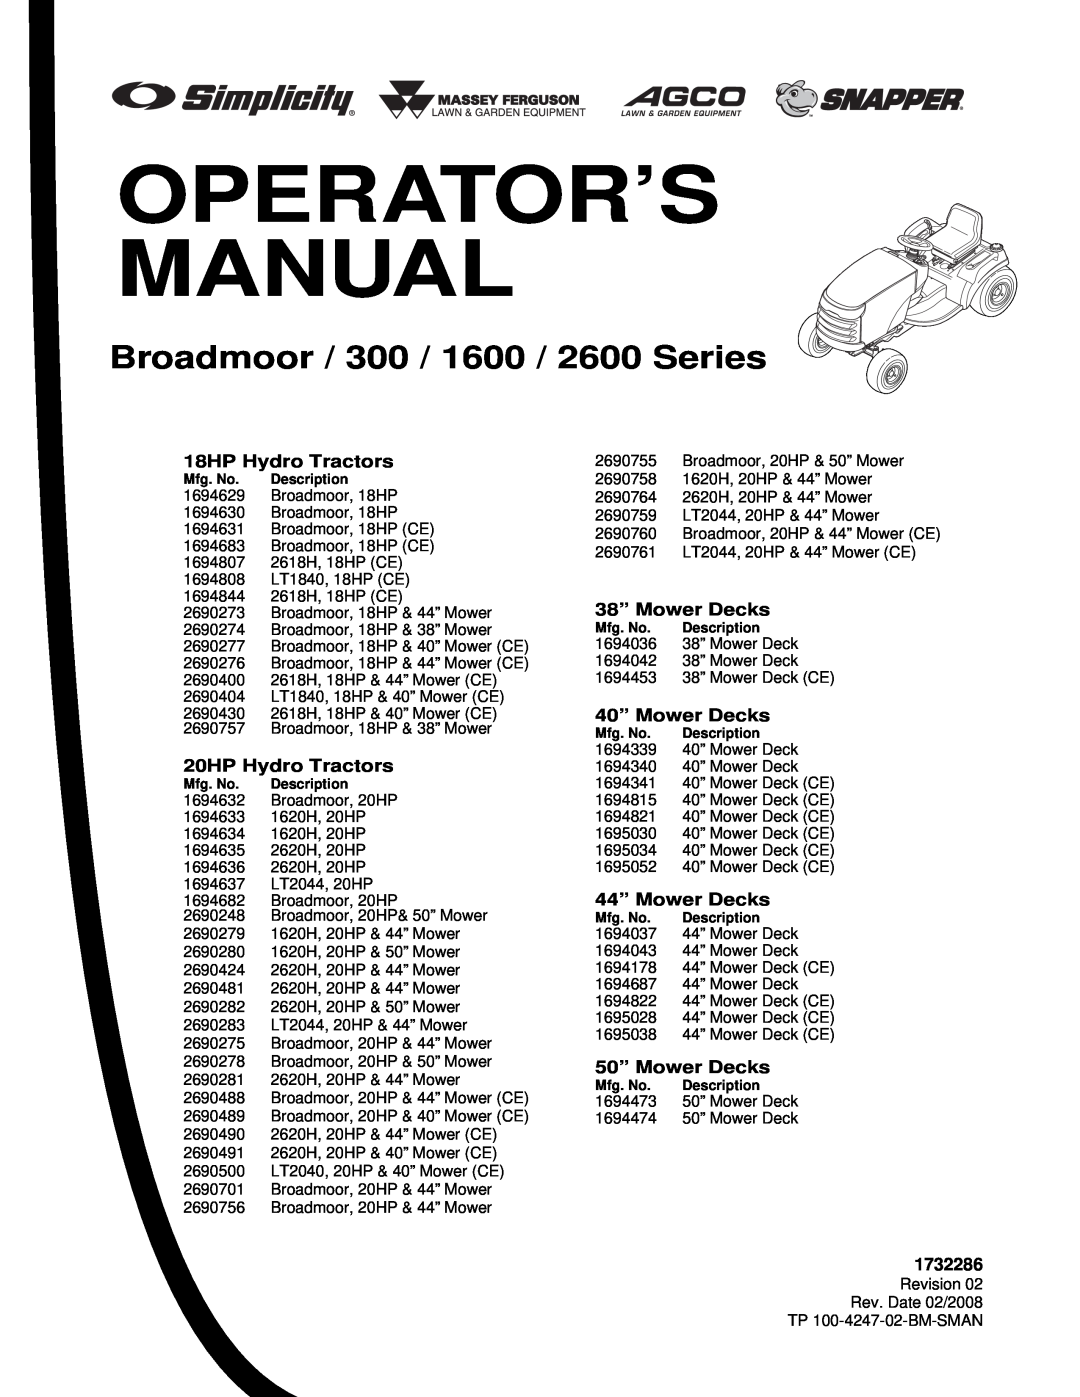 Simplicity 300 Series manual Broadmoor / 300 / 1600 / 2600 Series, Operator’S Manual 